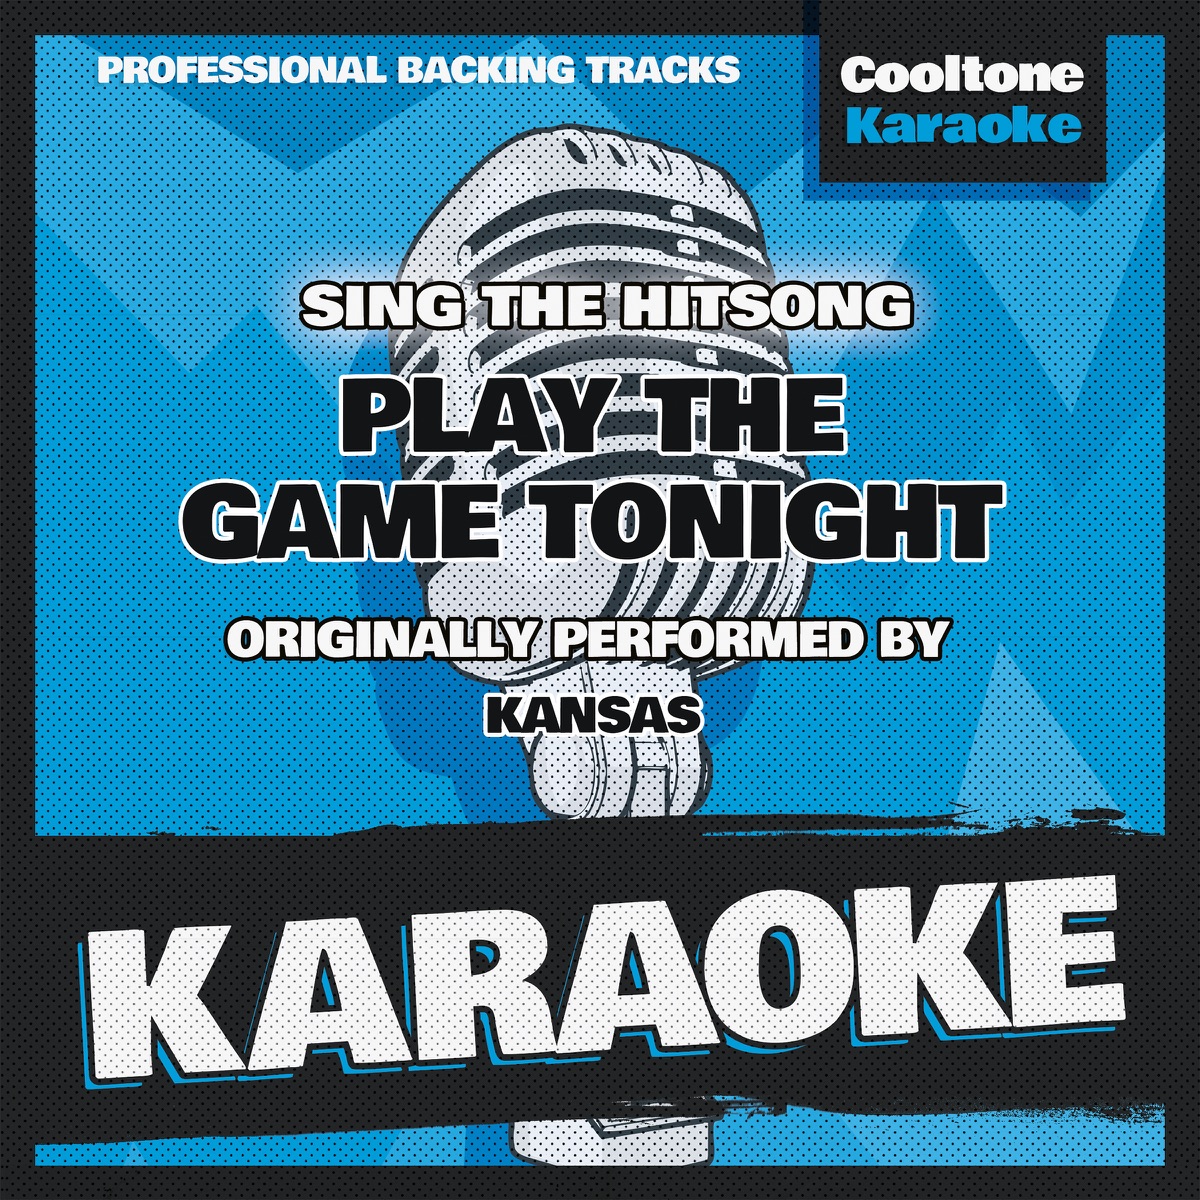 Play the Game Tonight (Originally Performed by Kansas) [Karaoke